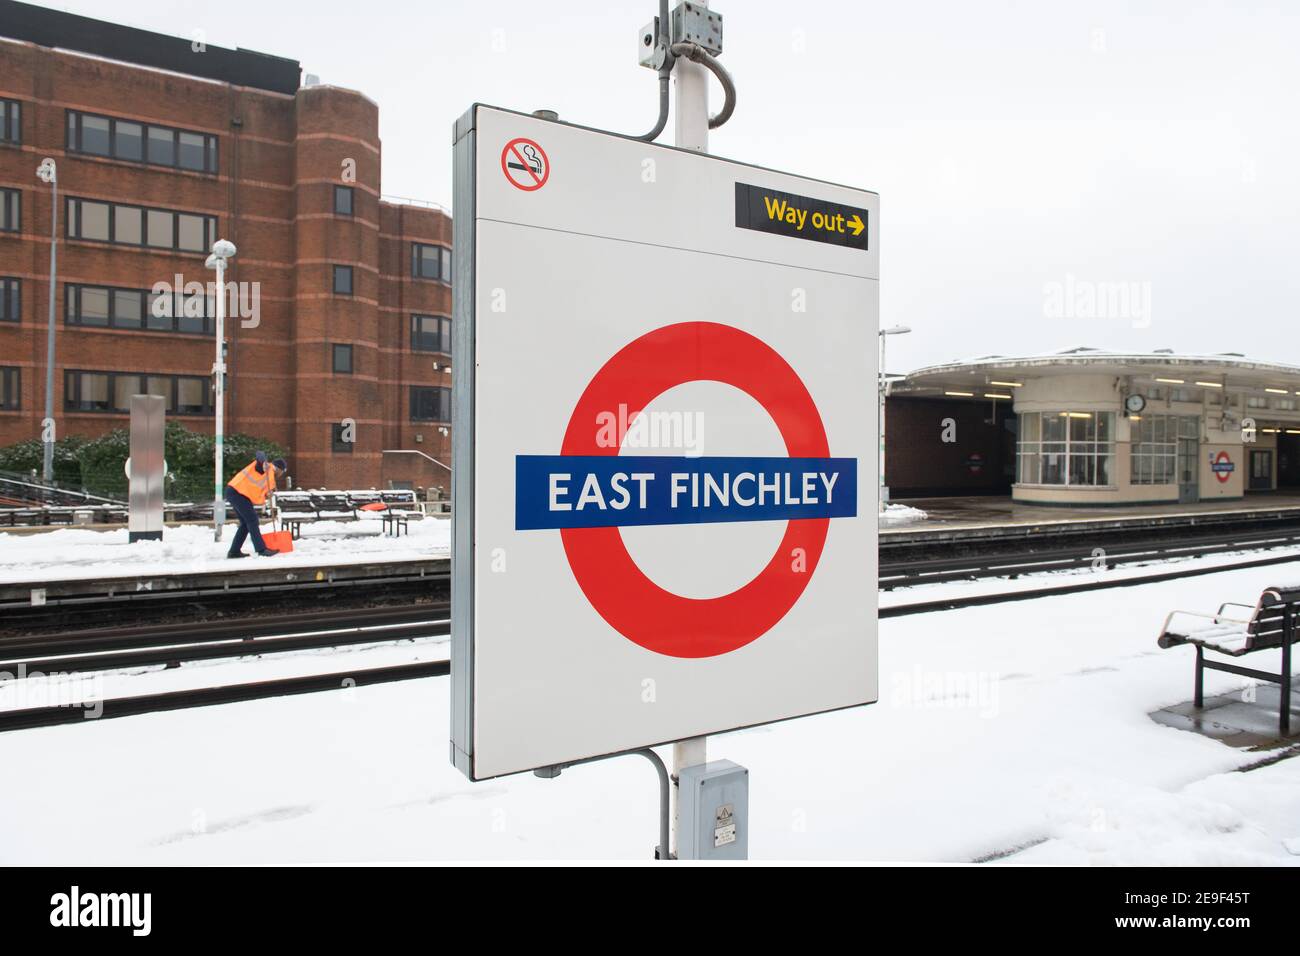 Neige de Londres. Gare de Finchley est, Northern Line. 24 janvier 2021. NB AUCUN FORMULAIRE DE CONSENTEMENT POUR LES PERSONNES EN PHOTOS Banque D'Images